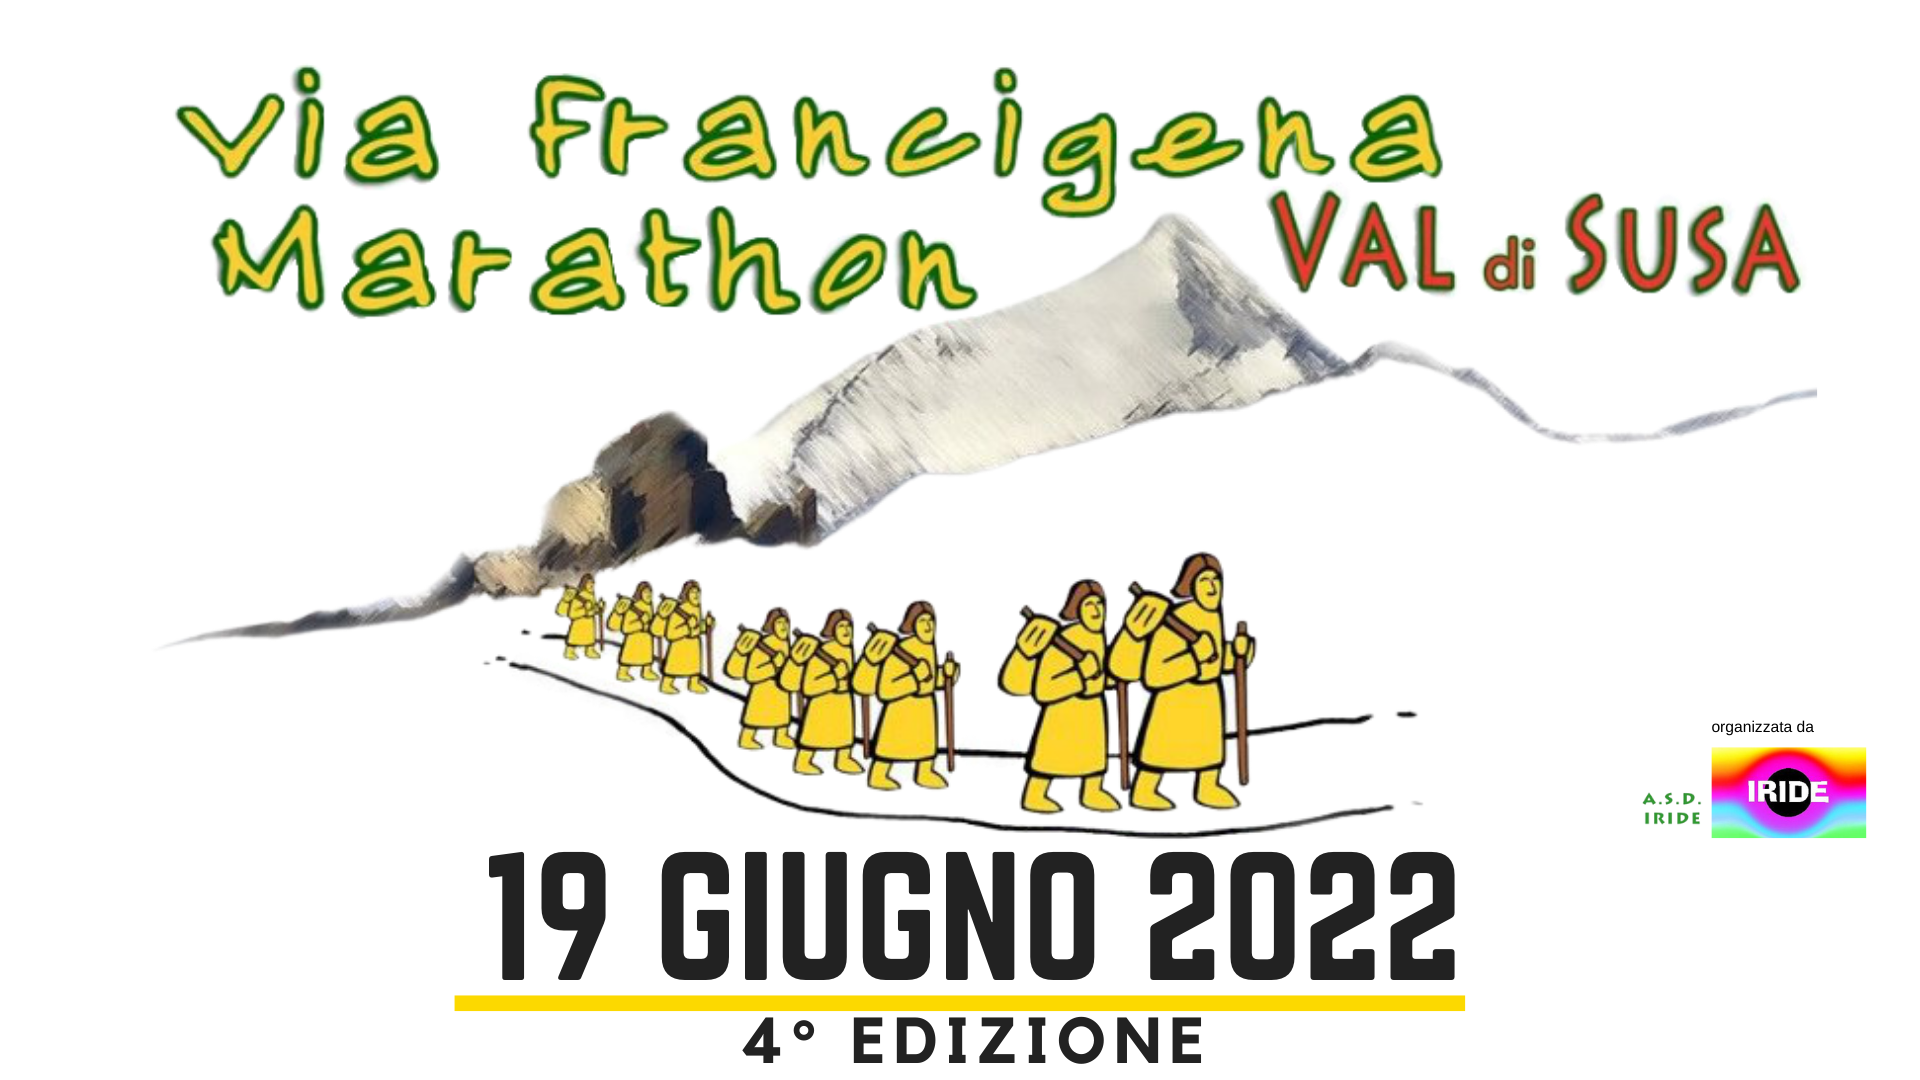 Via Francigena Marathon Val di Susa 2022